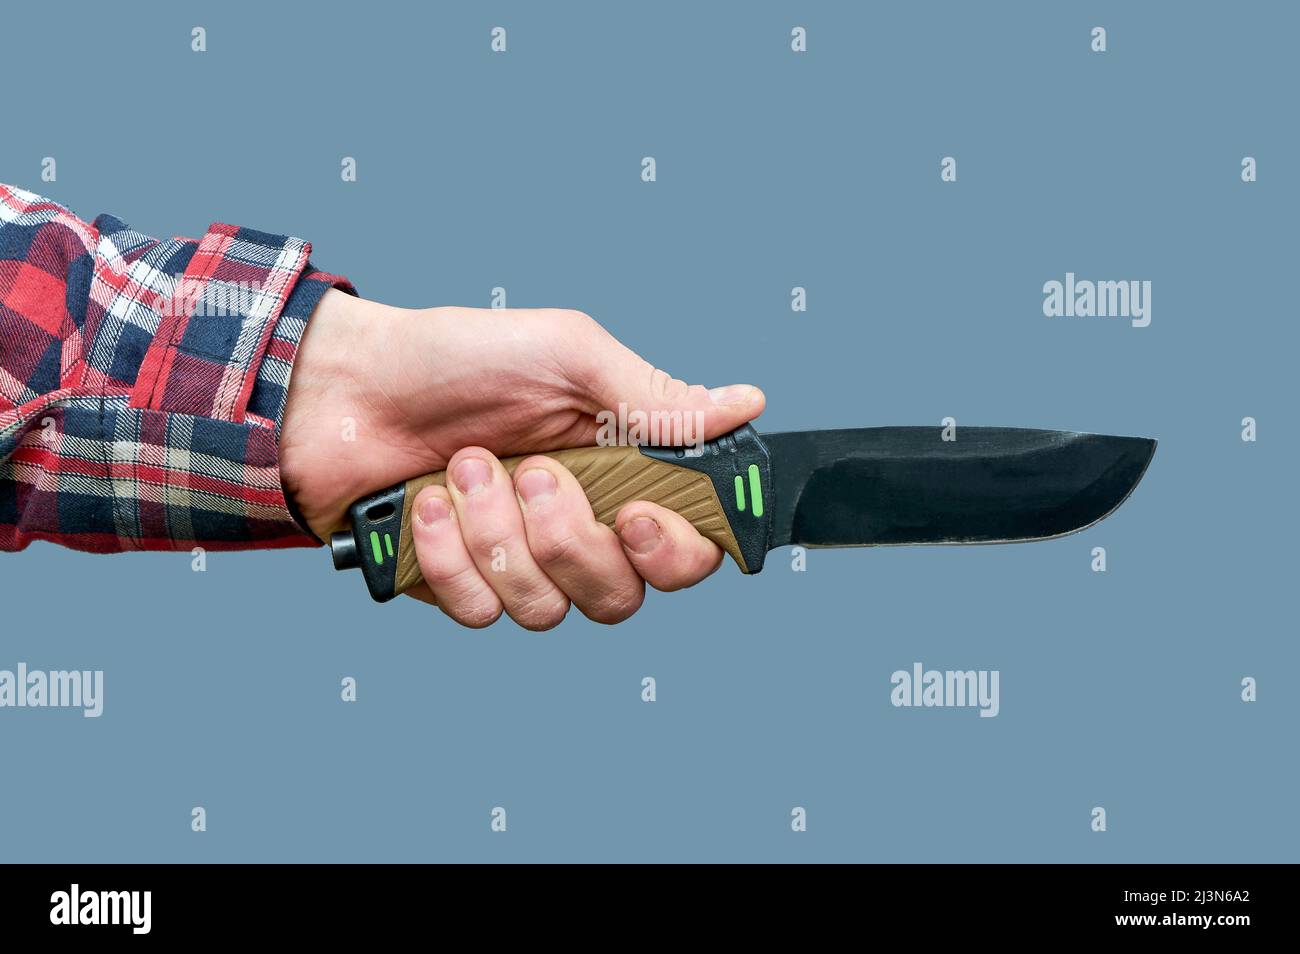 la main d'un homme tient un grand couteau tactique avec une poignée en plastique sur fond gris Banque D'Images